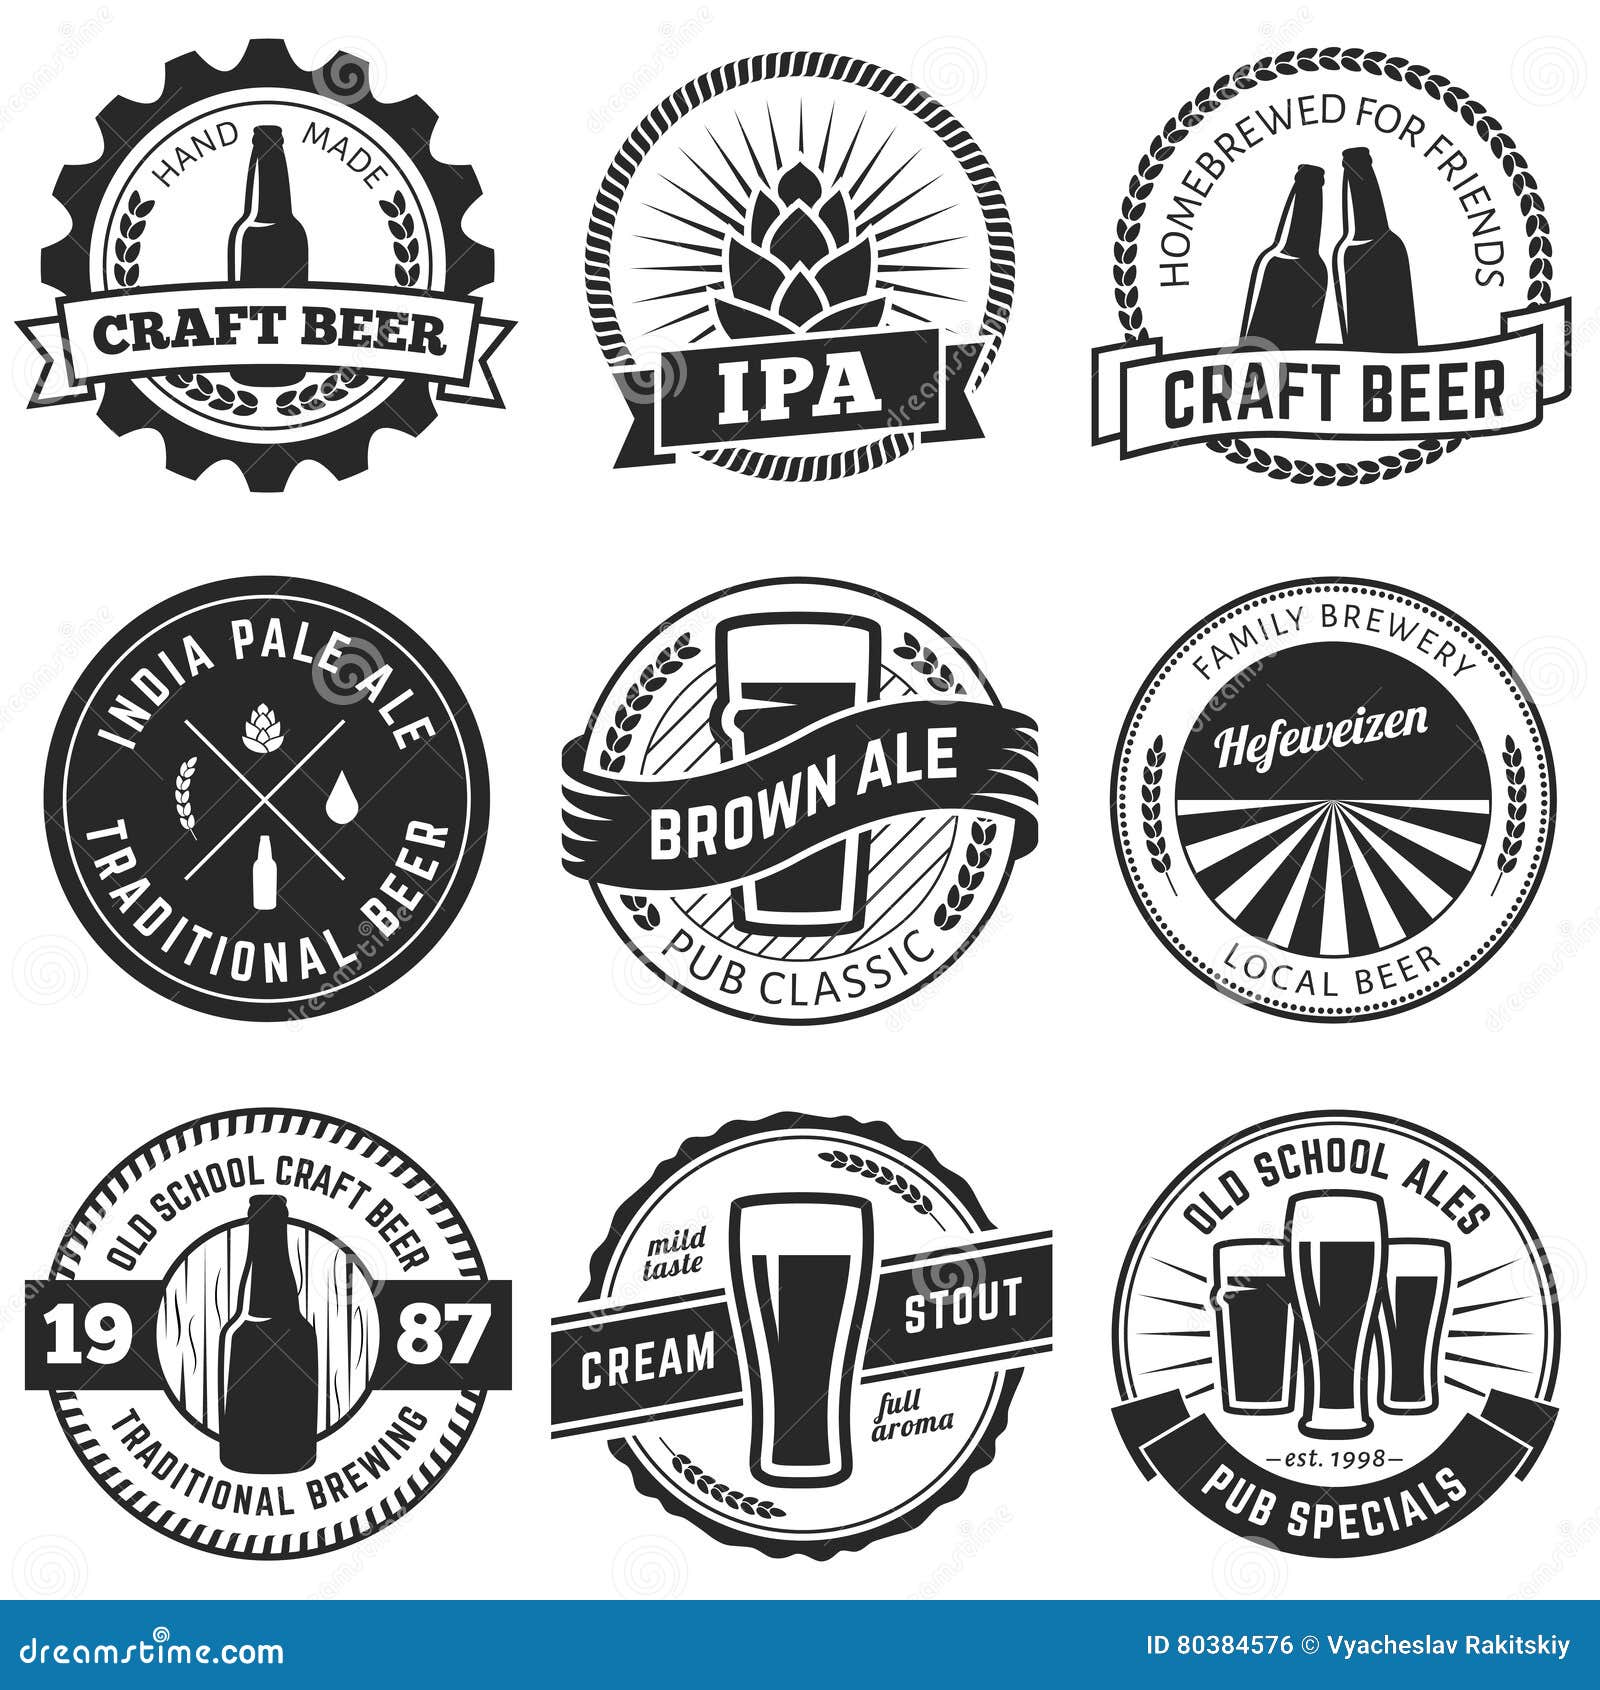  craft beer logos